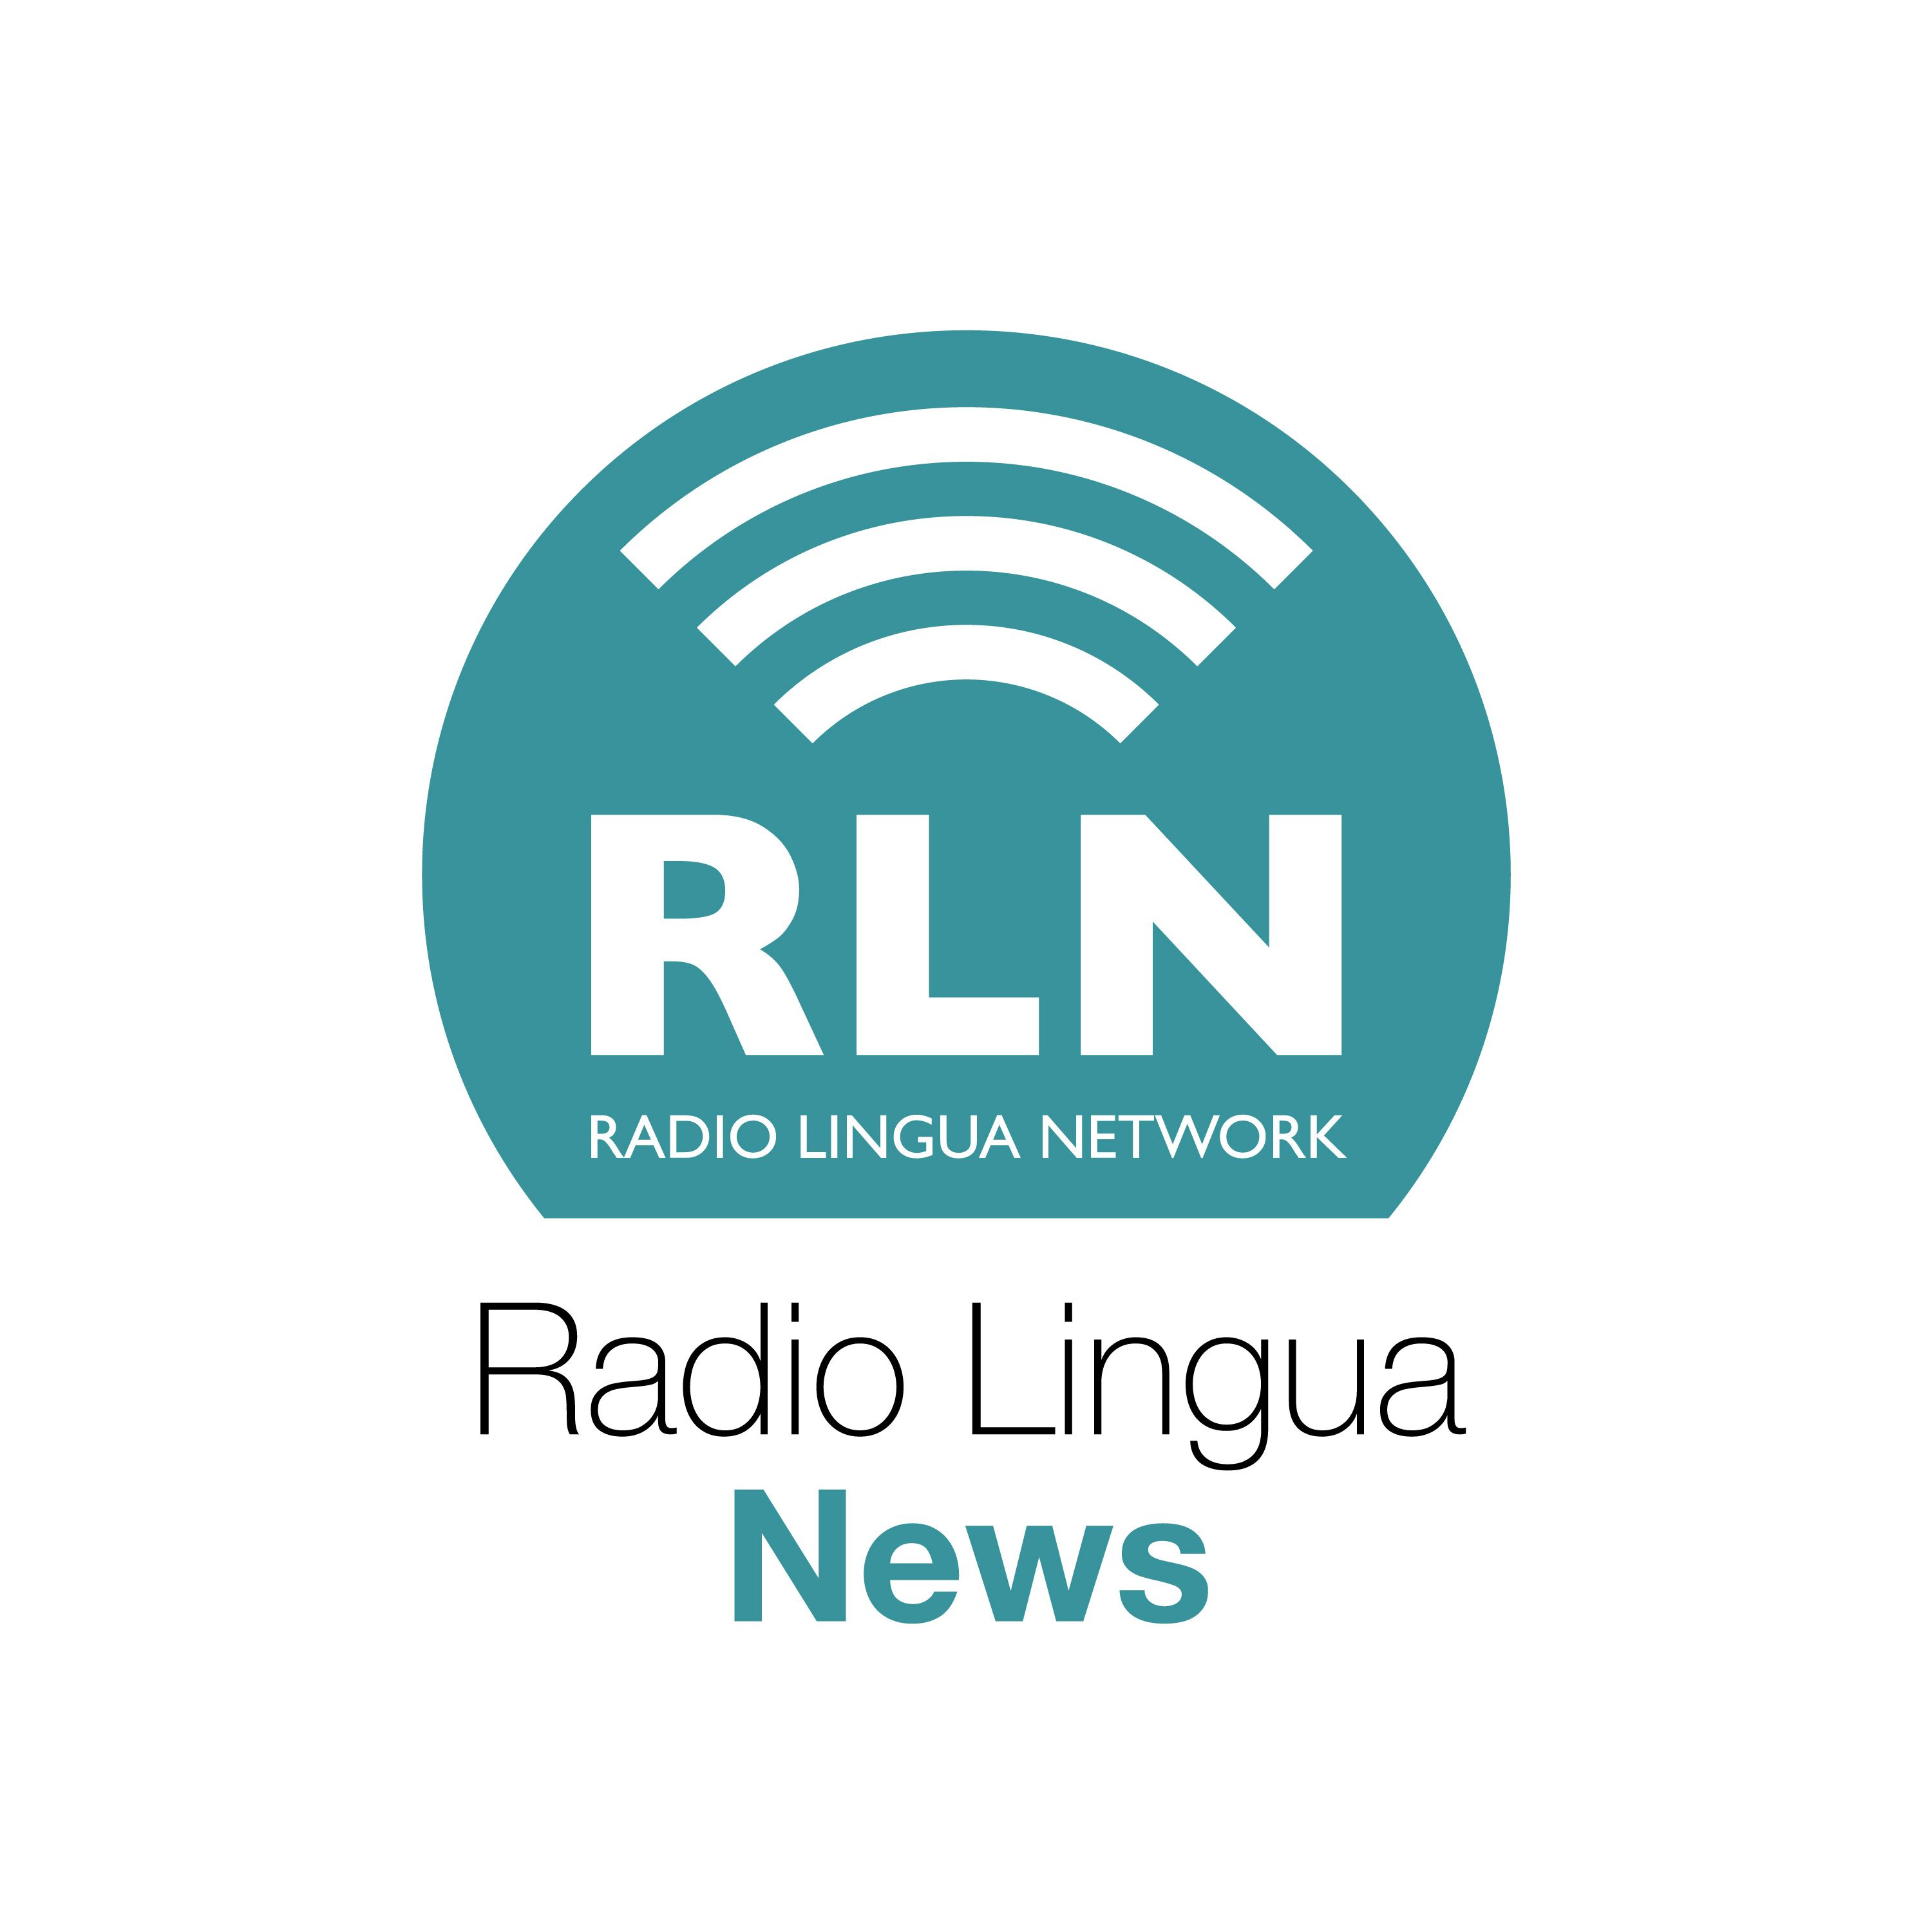 Celebrating 9 years of Radio Lingua